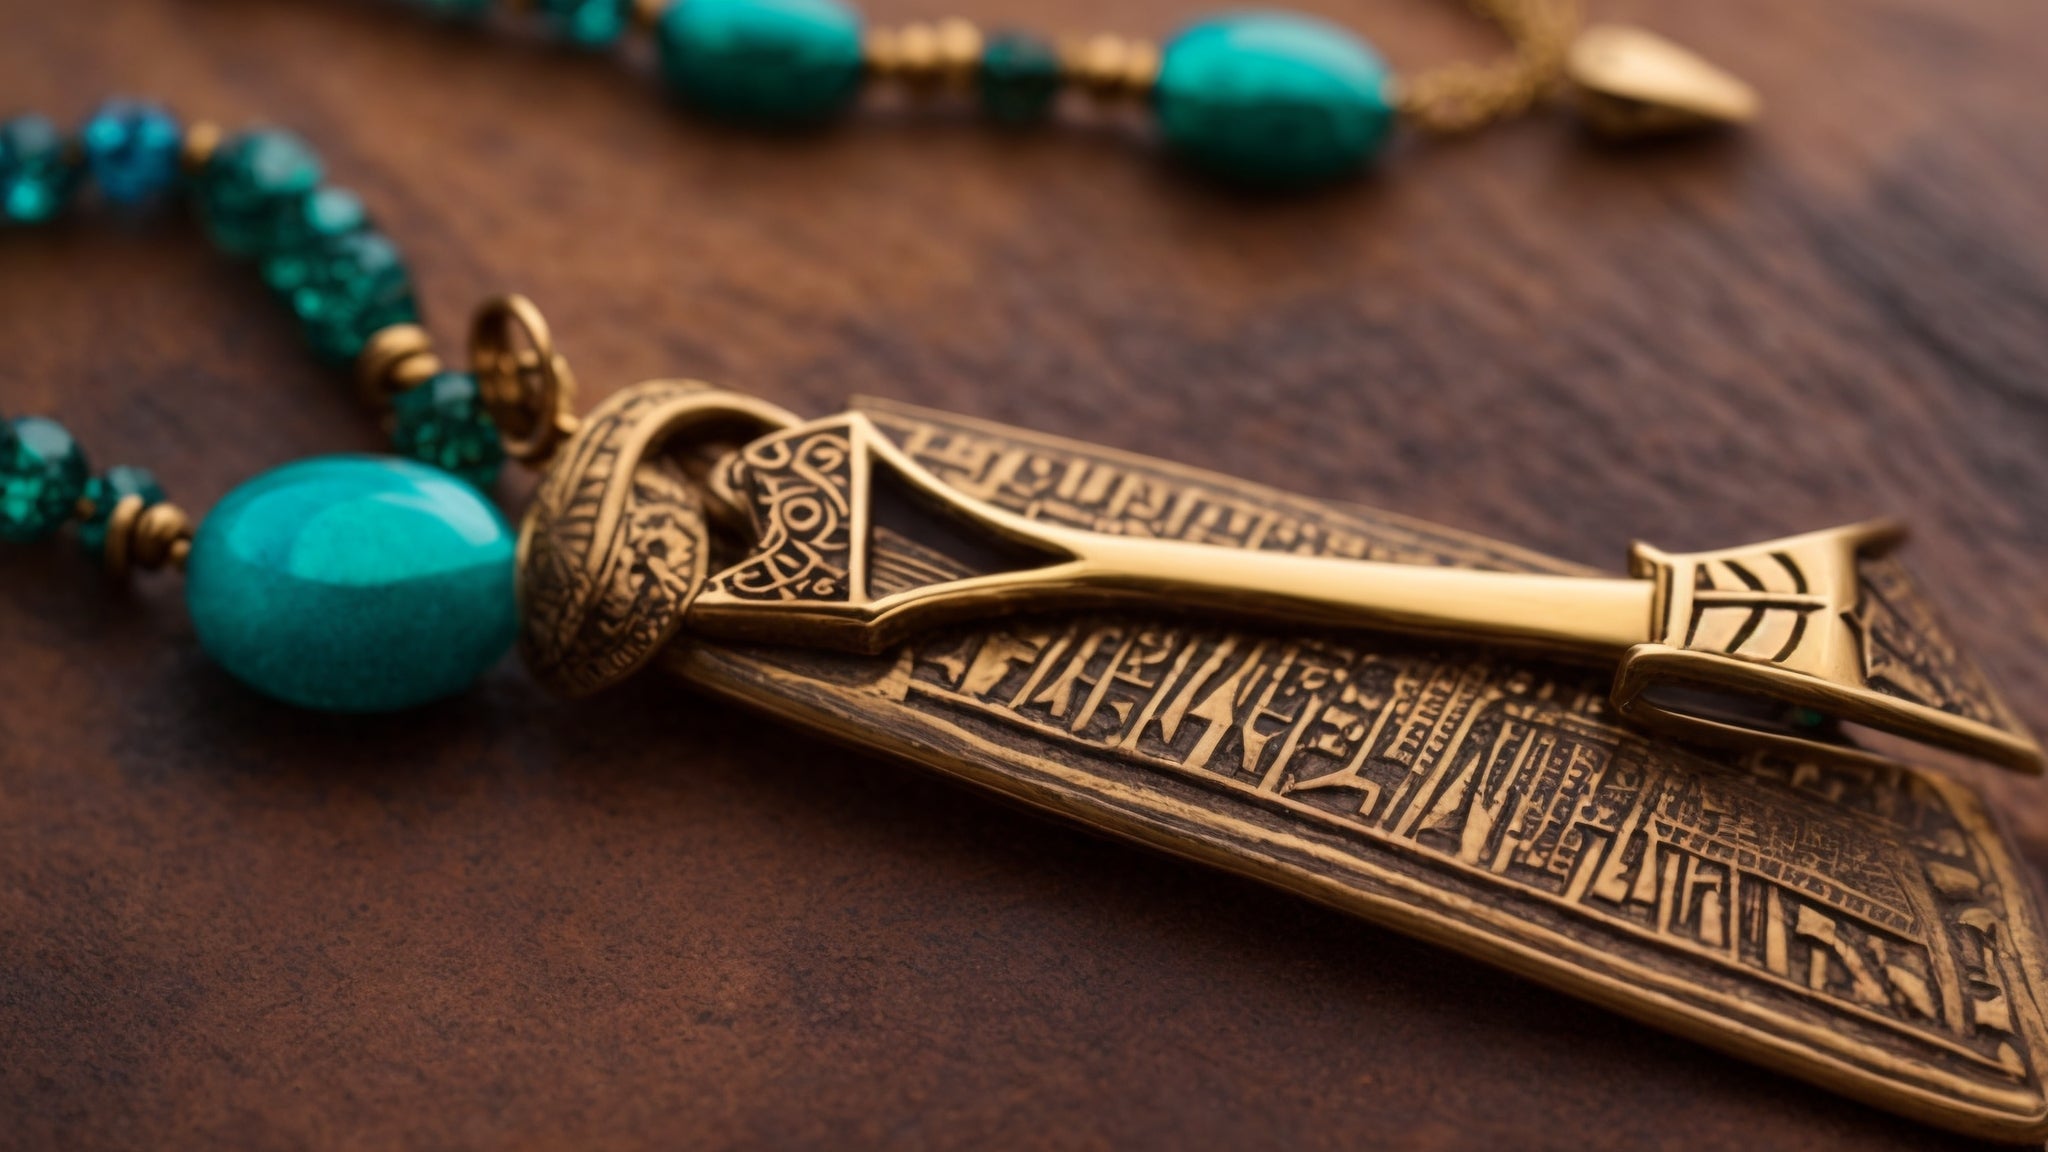 Desbloqueie seu estilo com um colar egípcio Ankh